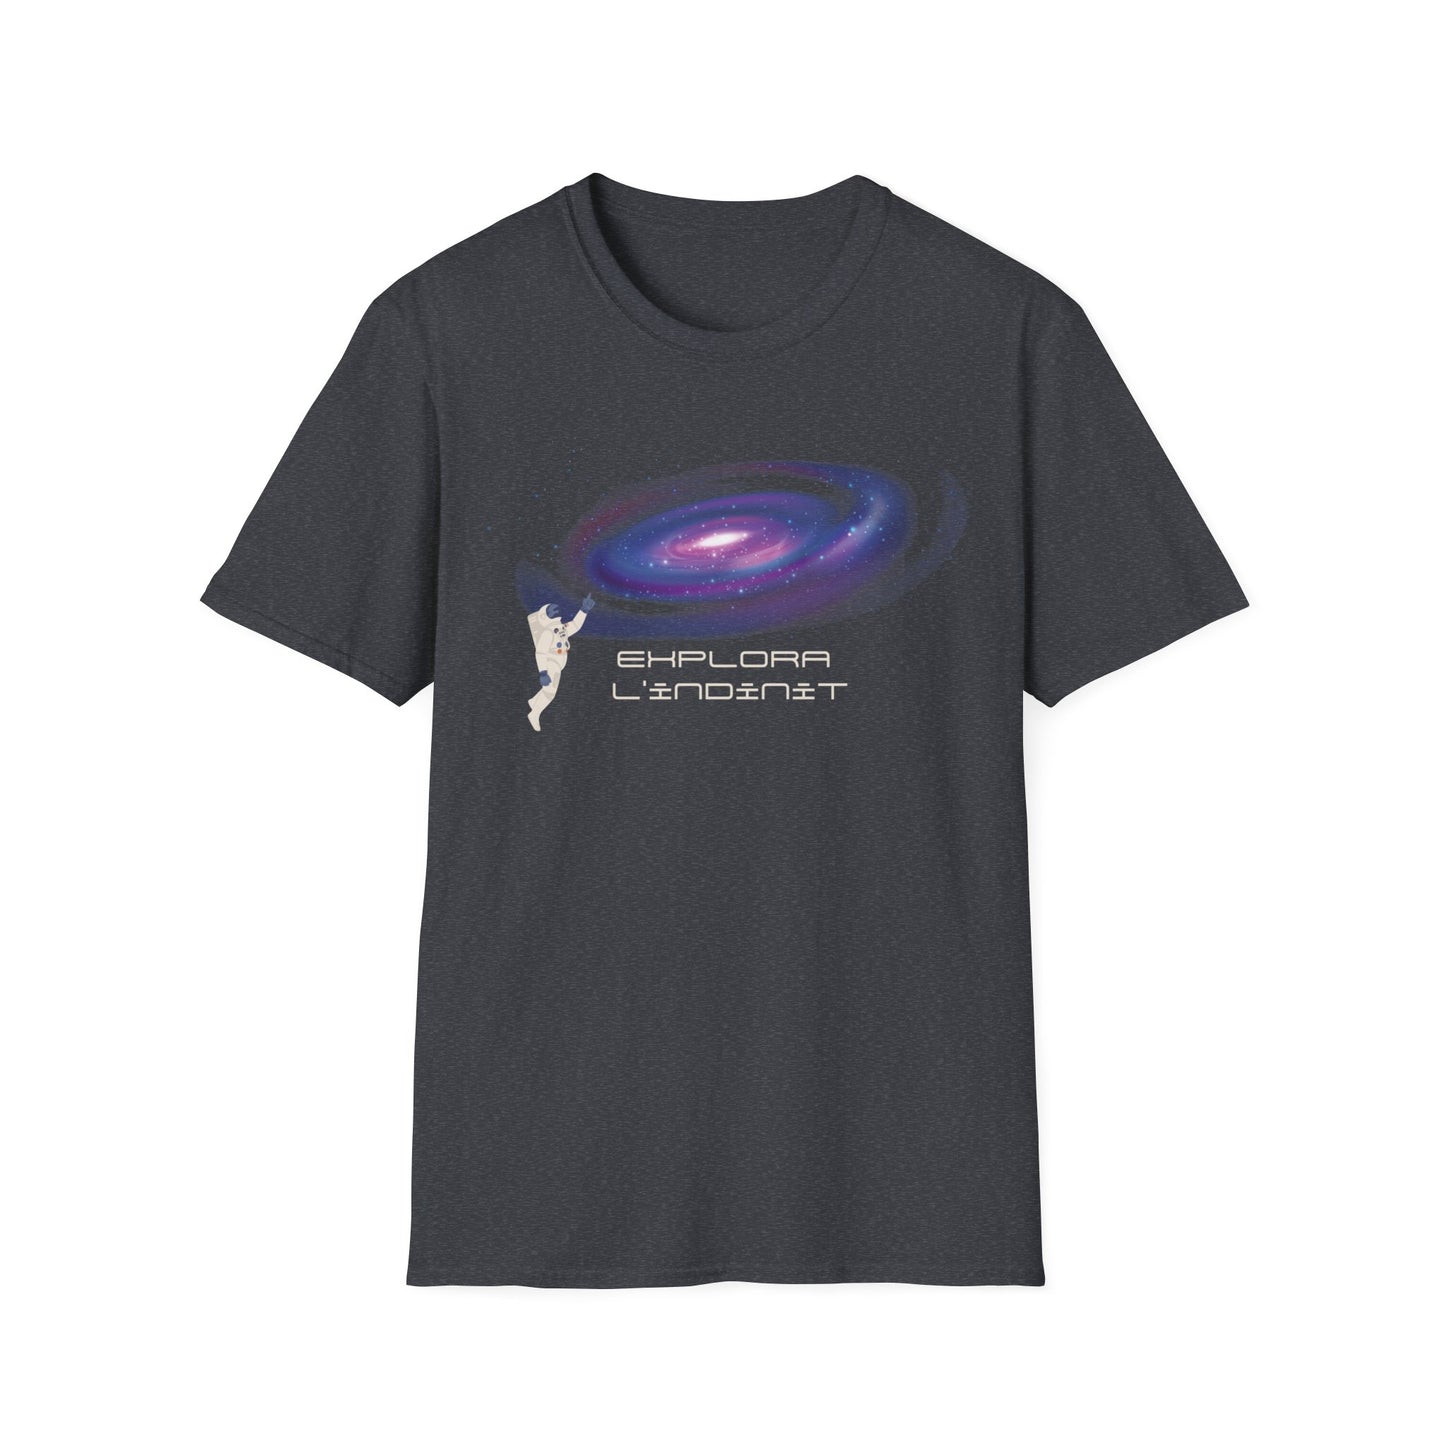 Unisex-Kurzarm-T-Shirt mit einem Satz auf Katalanisch über das Sonnensystem.